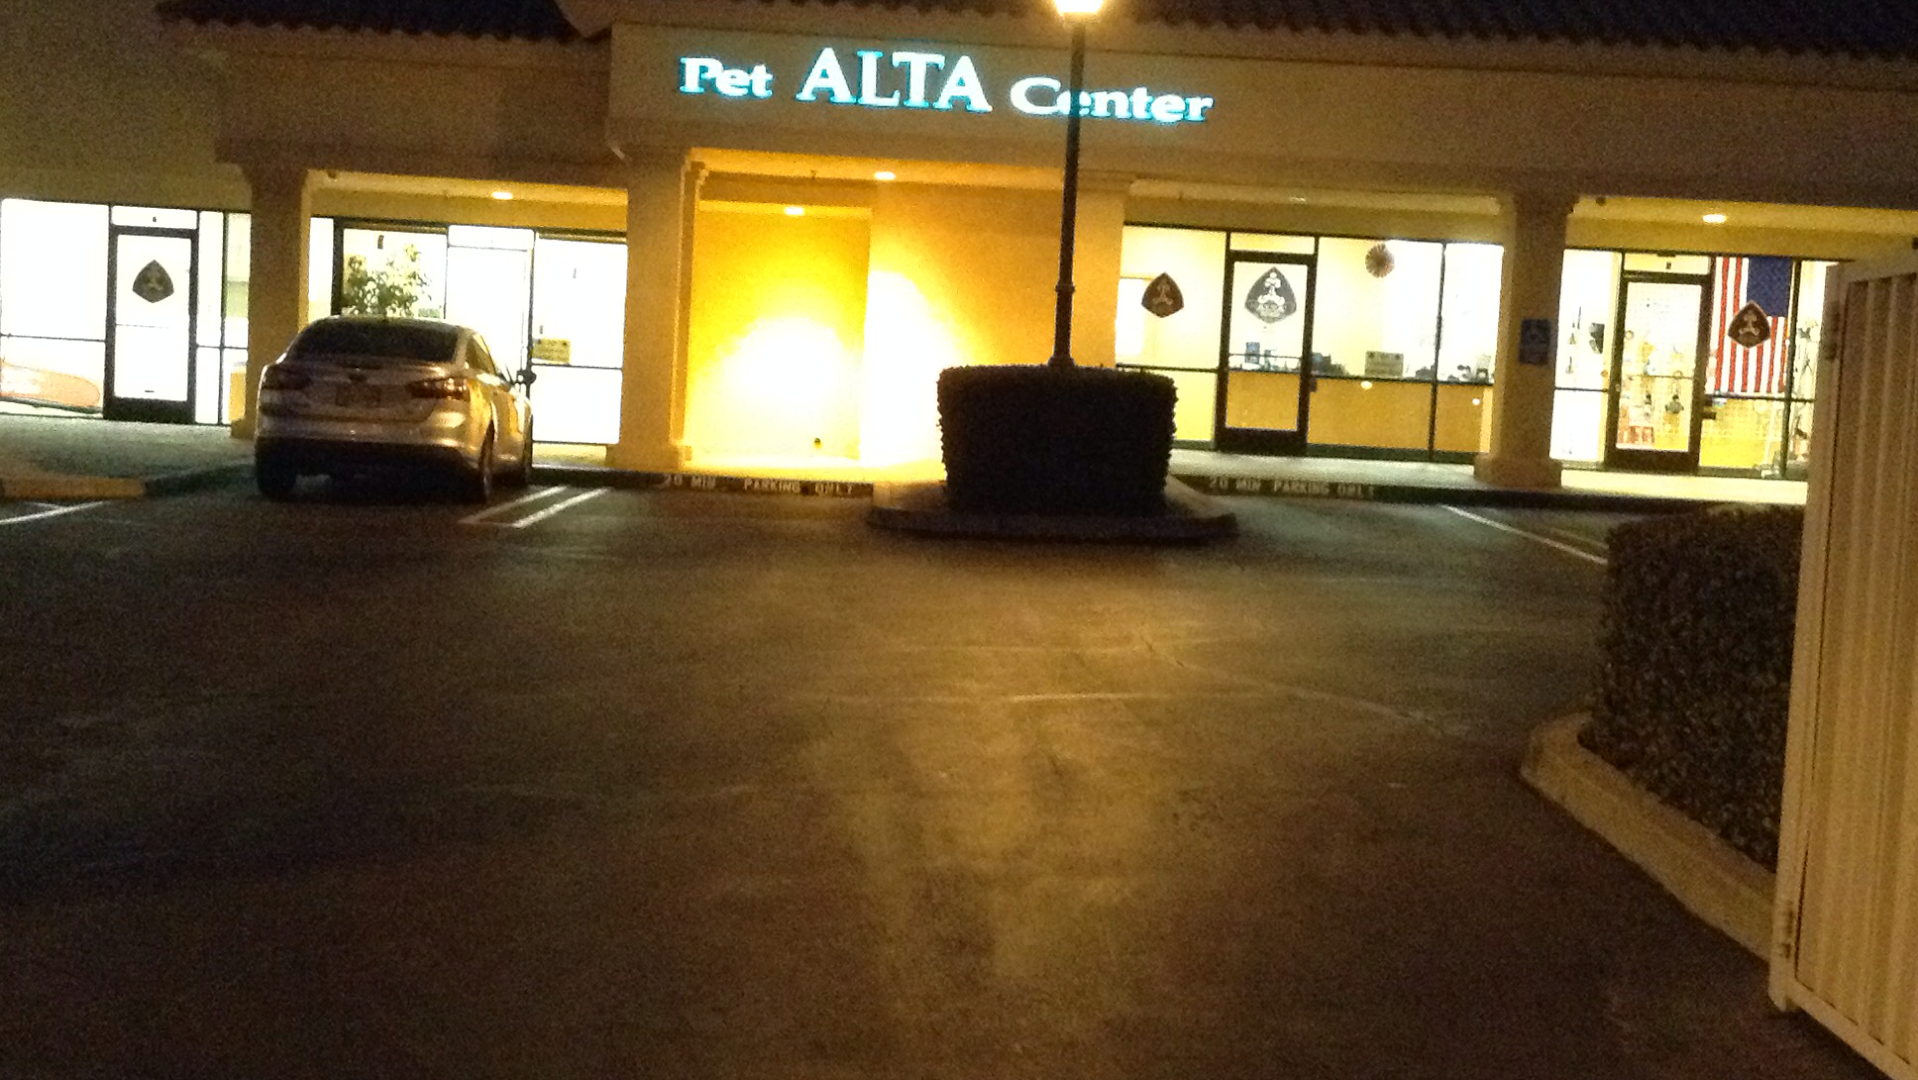 Alta Pet Center